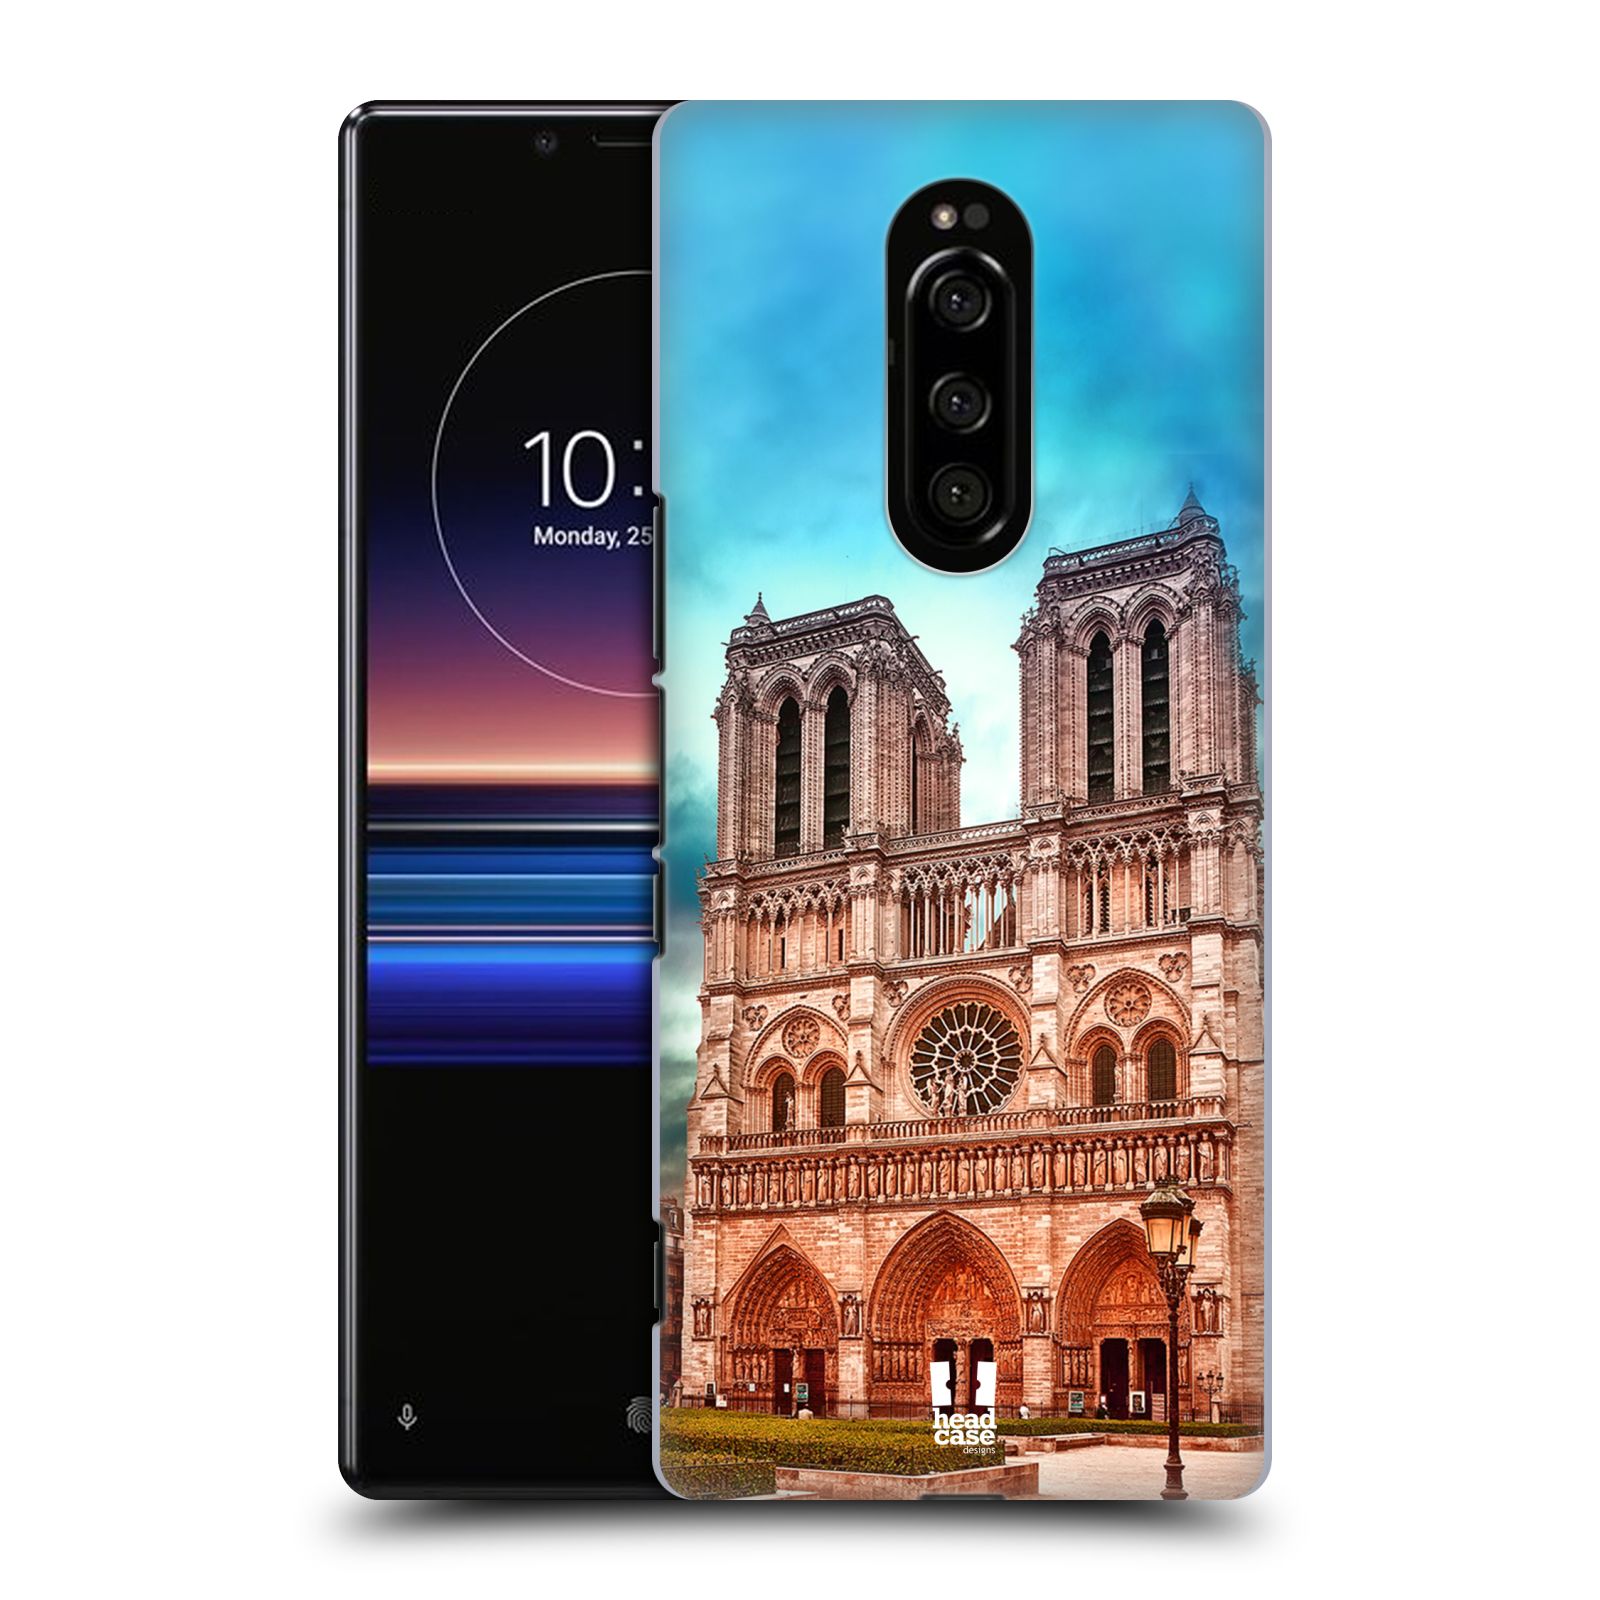 Pouzdro na mobil Sony Xperia 1 - HEAD CASE - historická místa katedrála Notre Dame